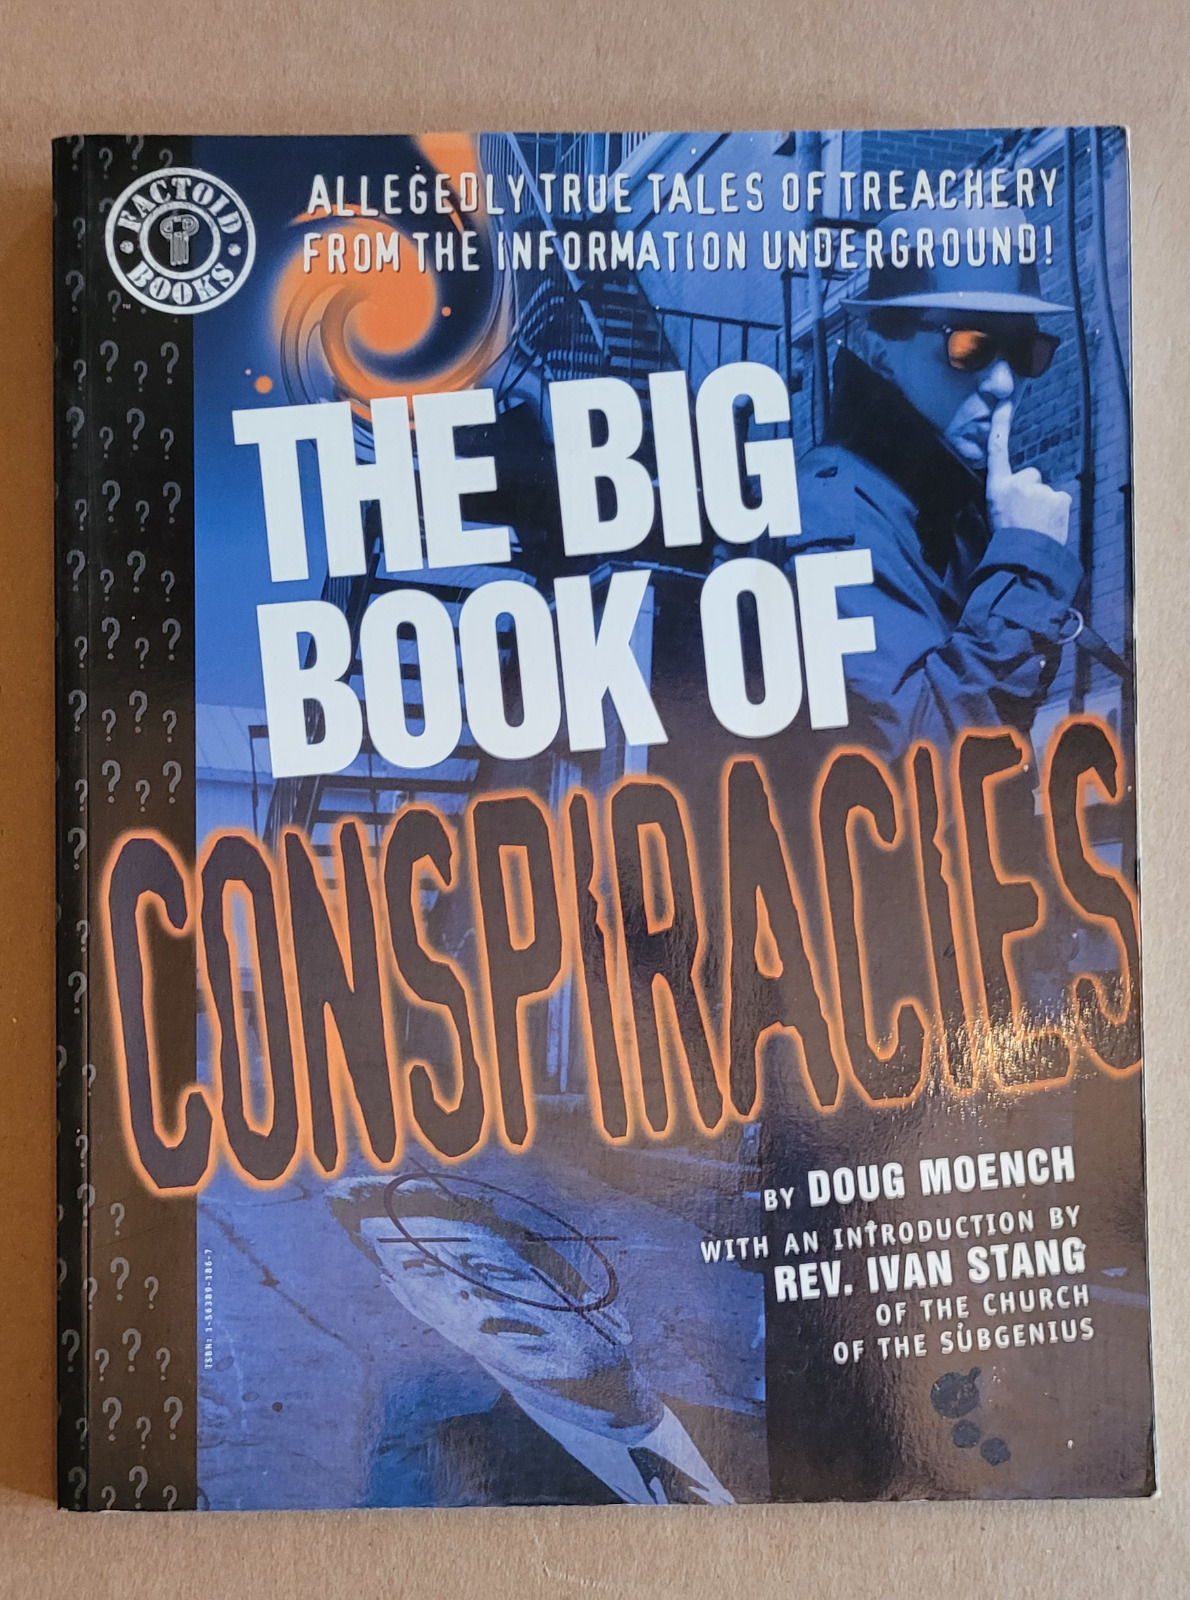 Big Book of Conspiracies, Paradox Press, Bryan Talbot, Rick Geary, many more